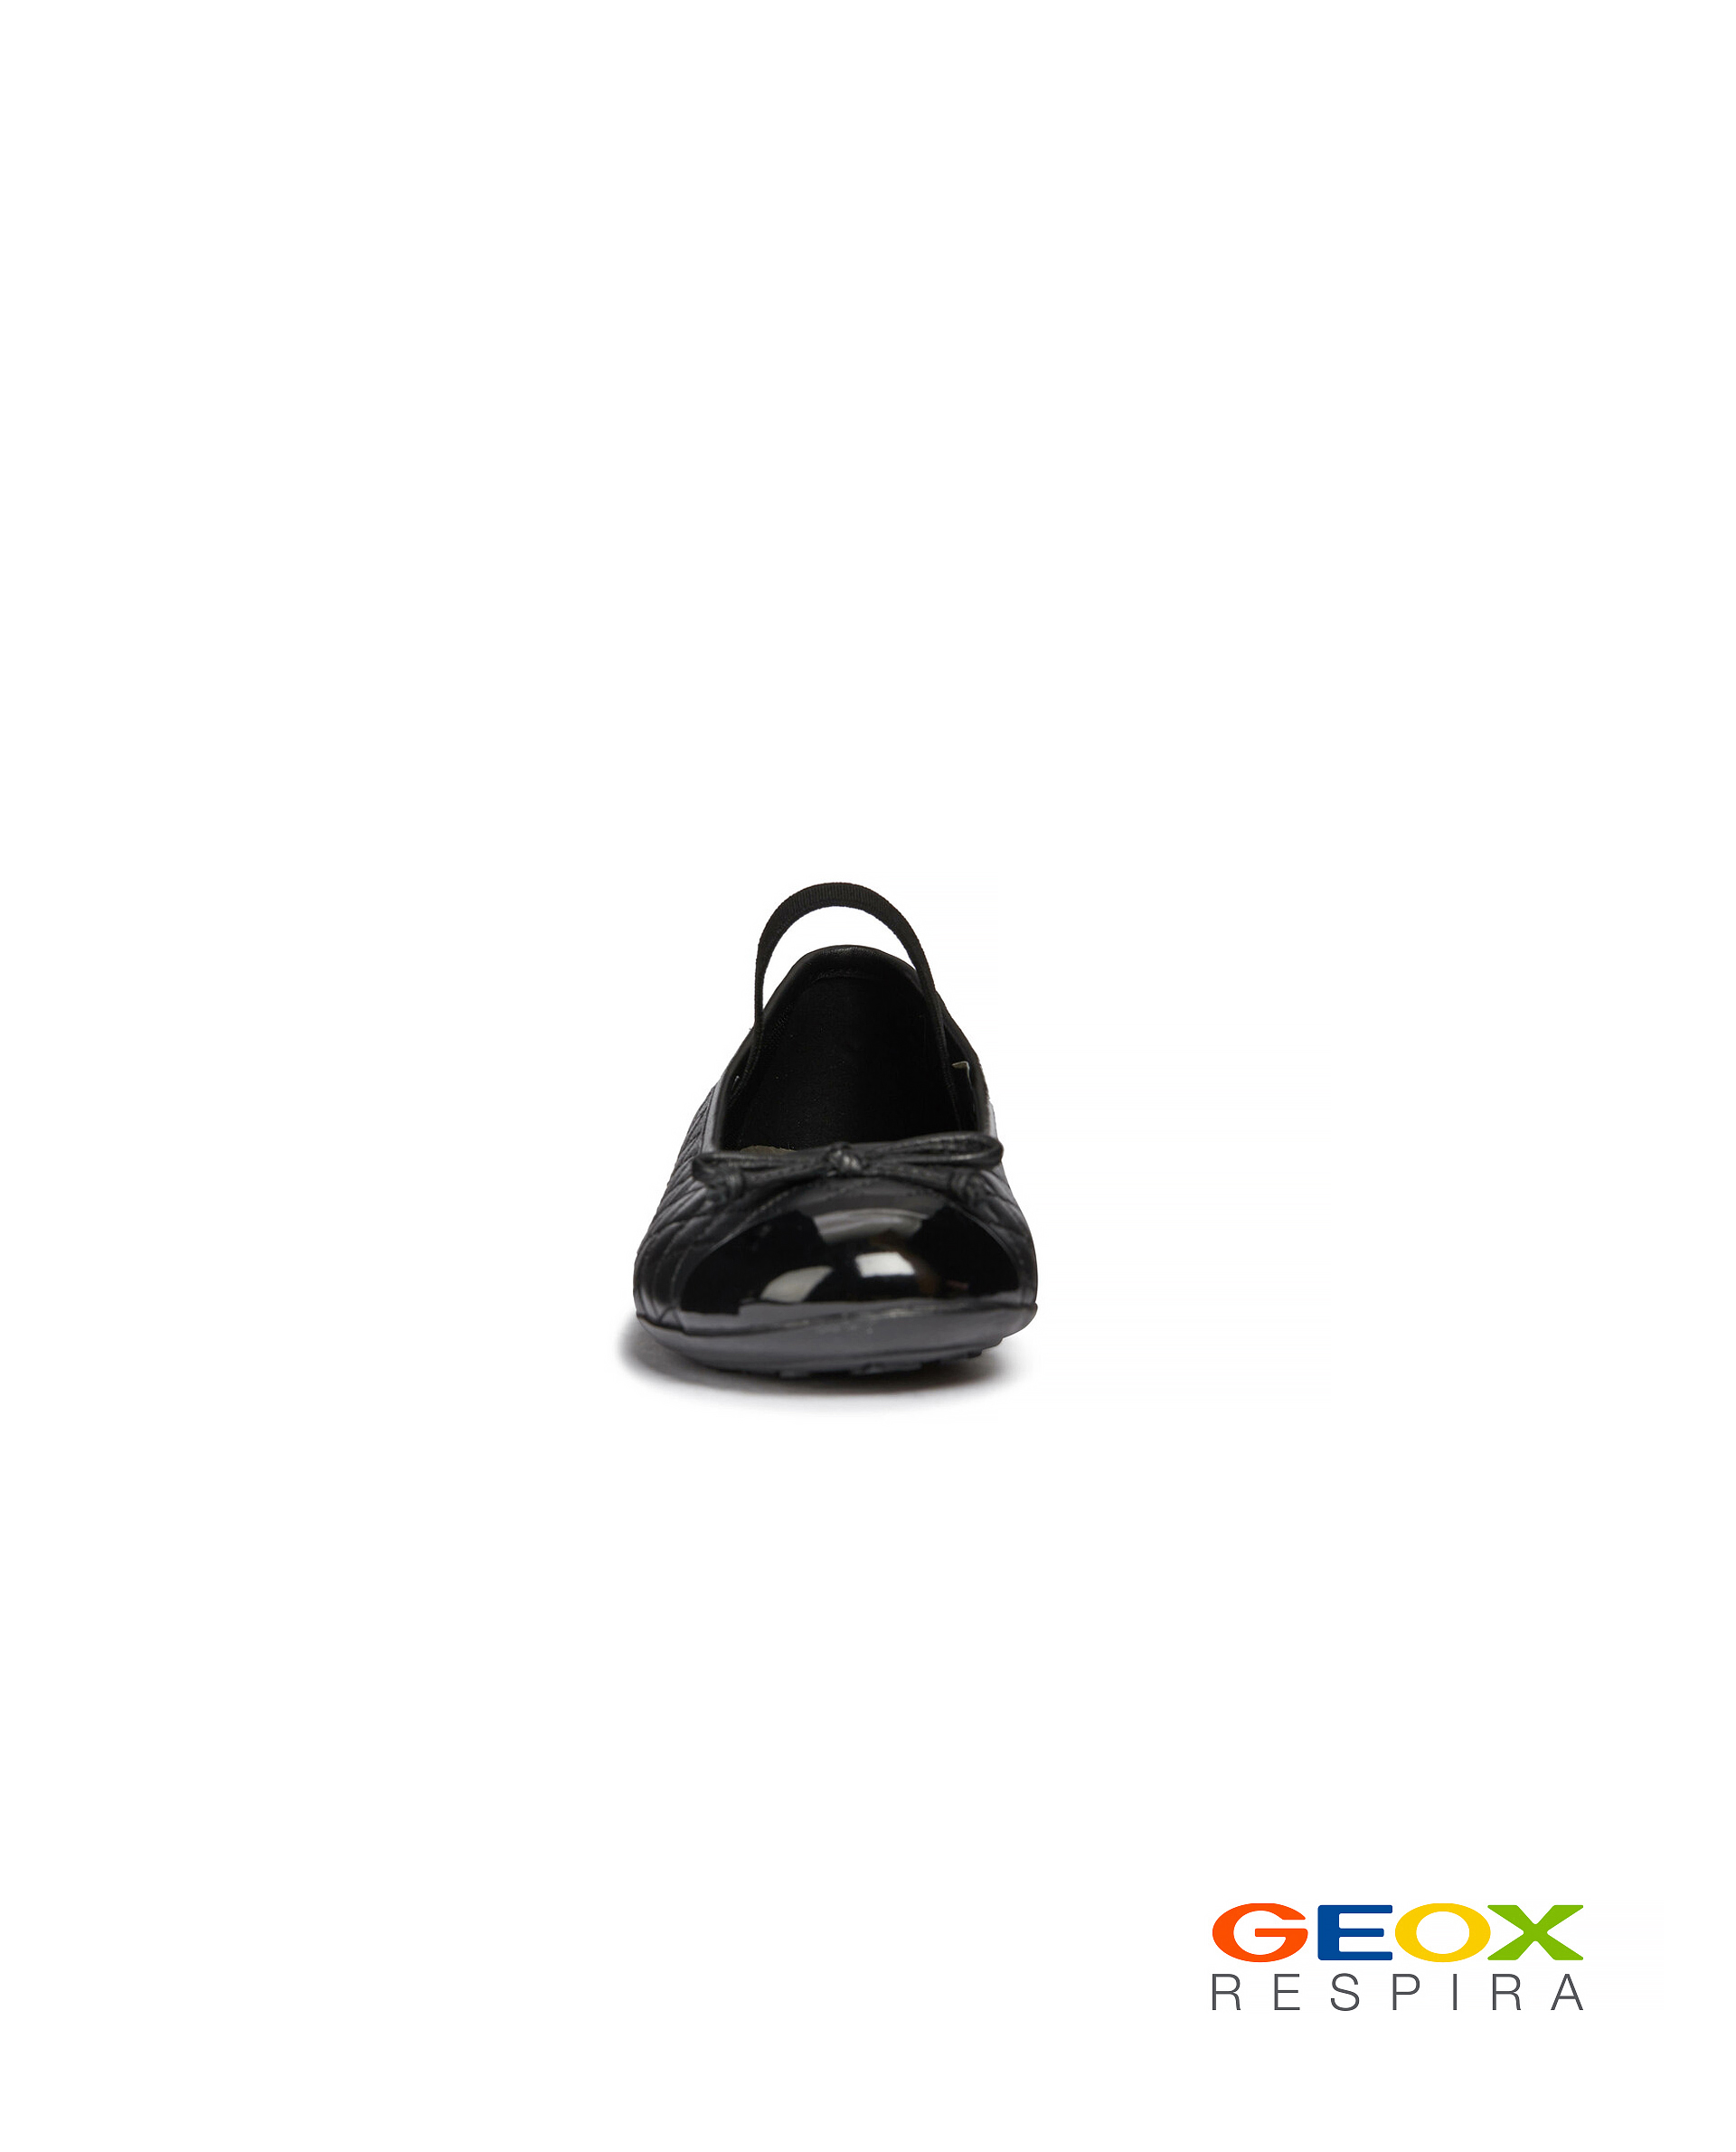 Черные балетки Geox 219GSGS0001, размер 35, цвет черный - фото 3